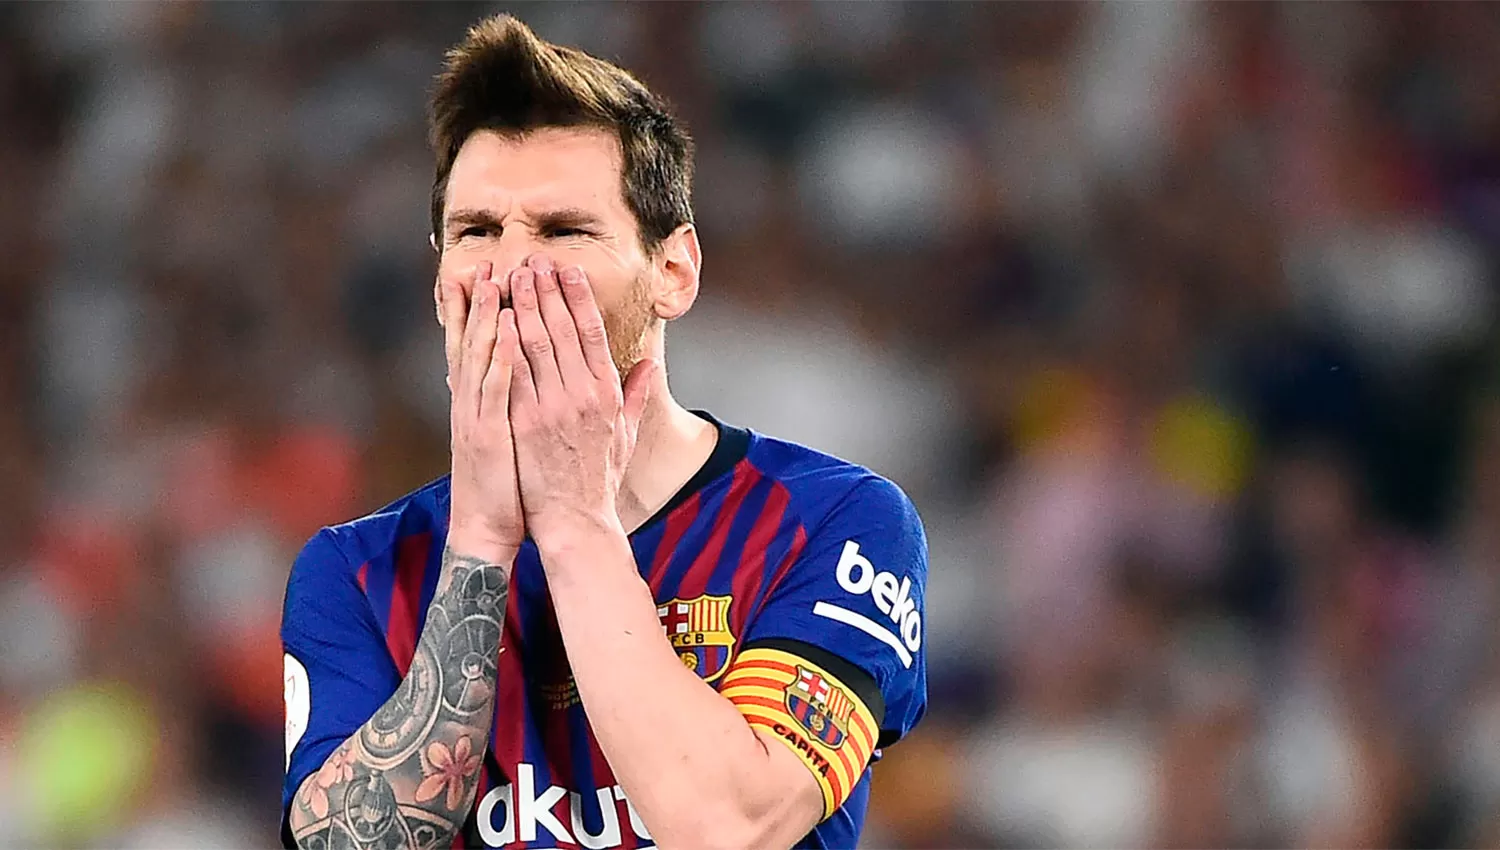 ¿Qué le pasa a Messi? El Barcelona volvió a perder y preocupa su nivel